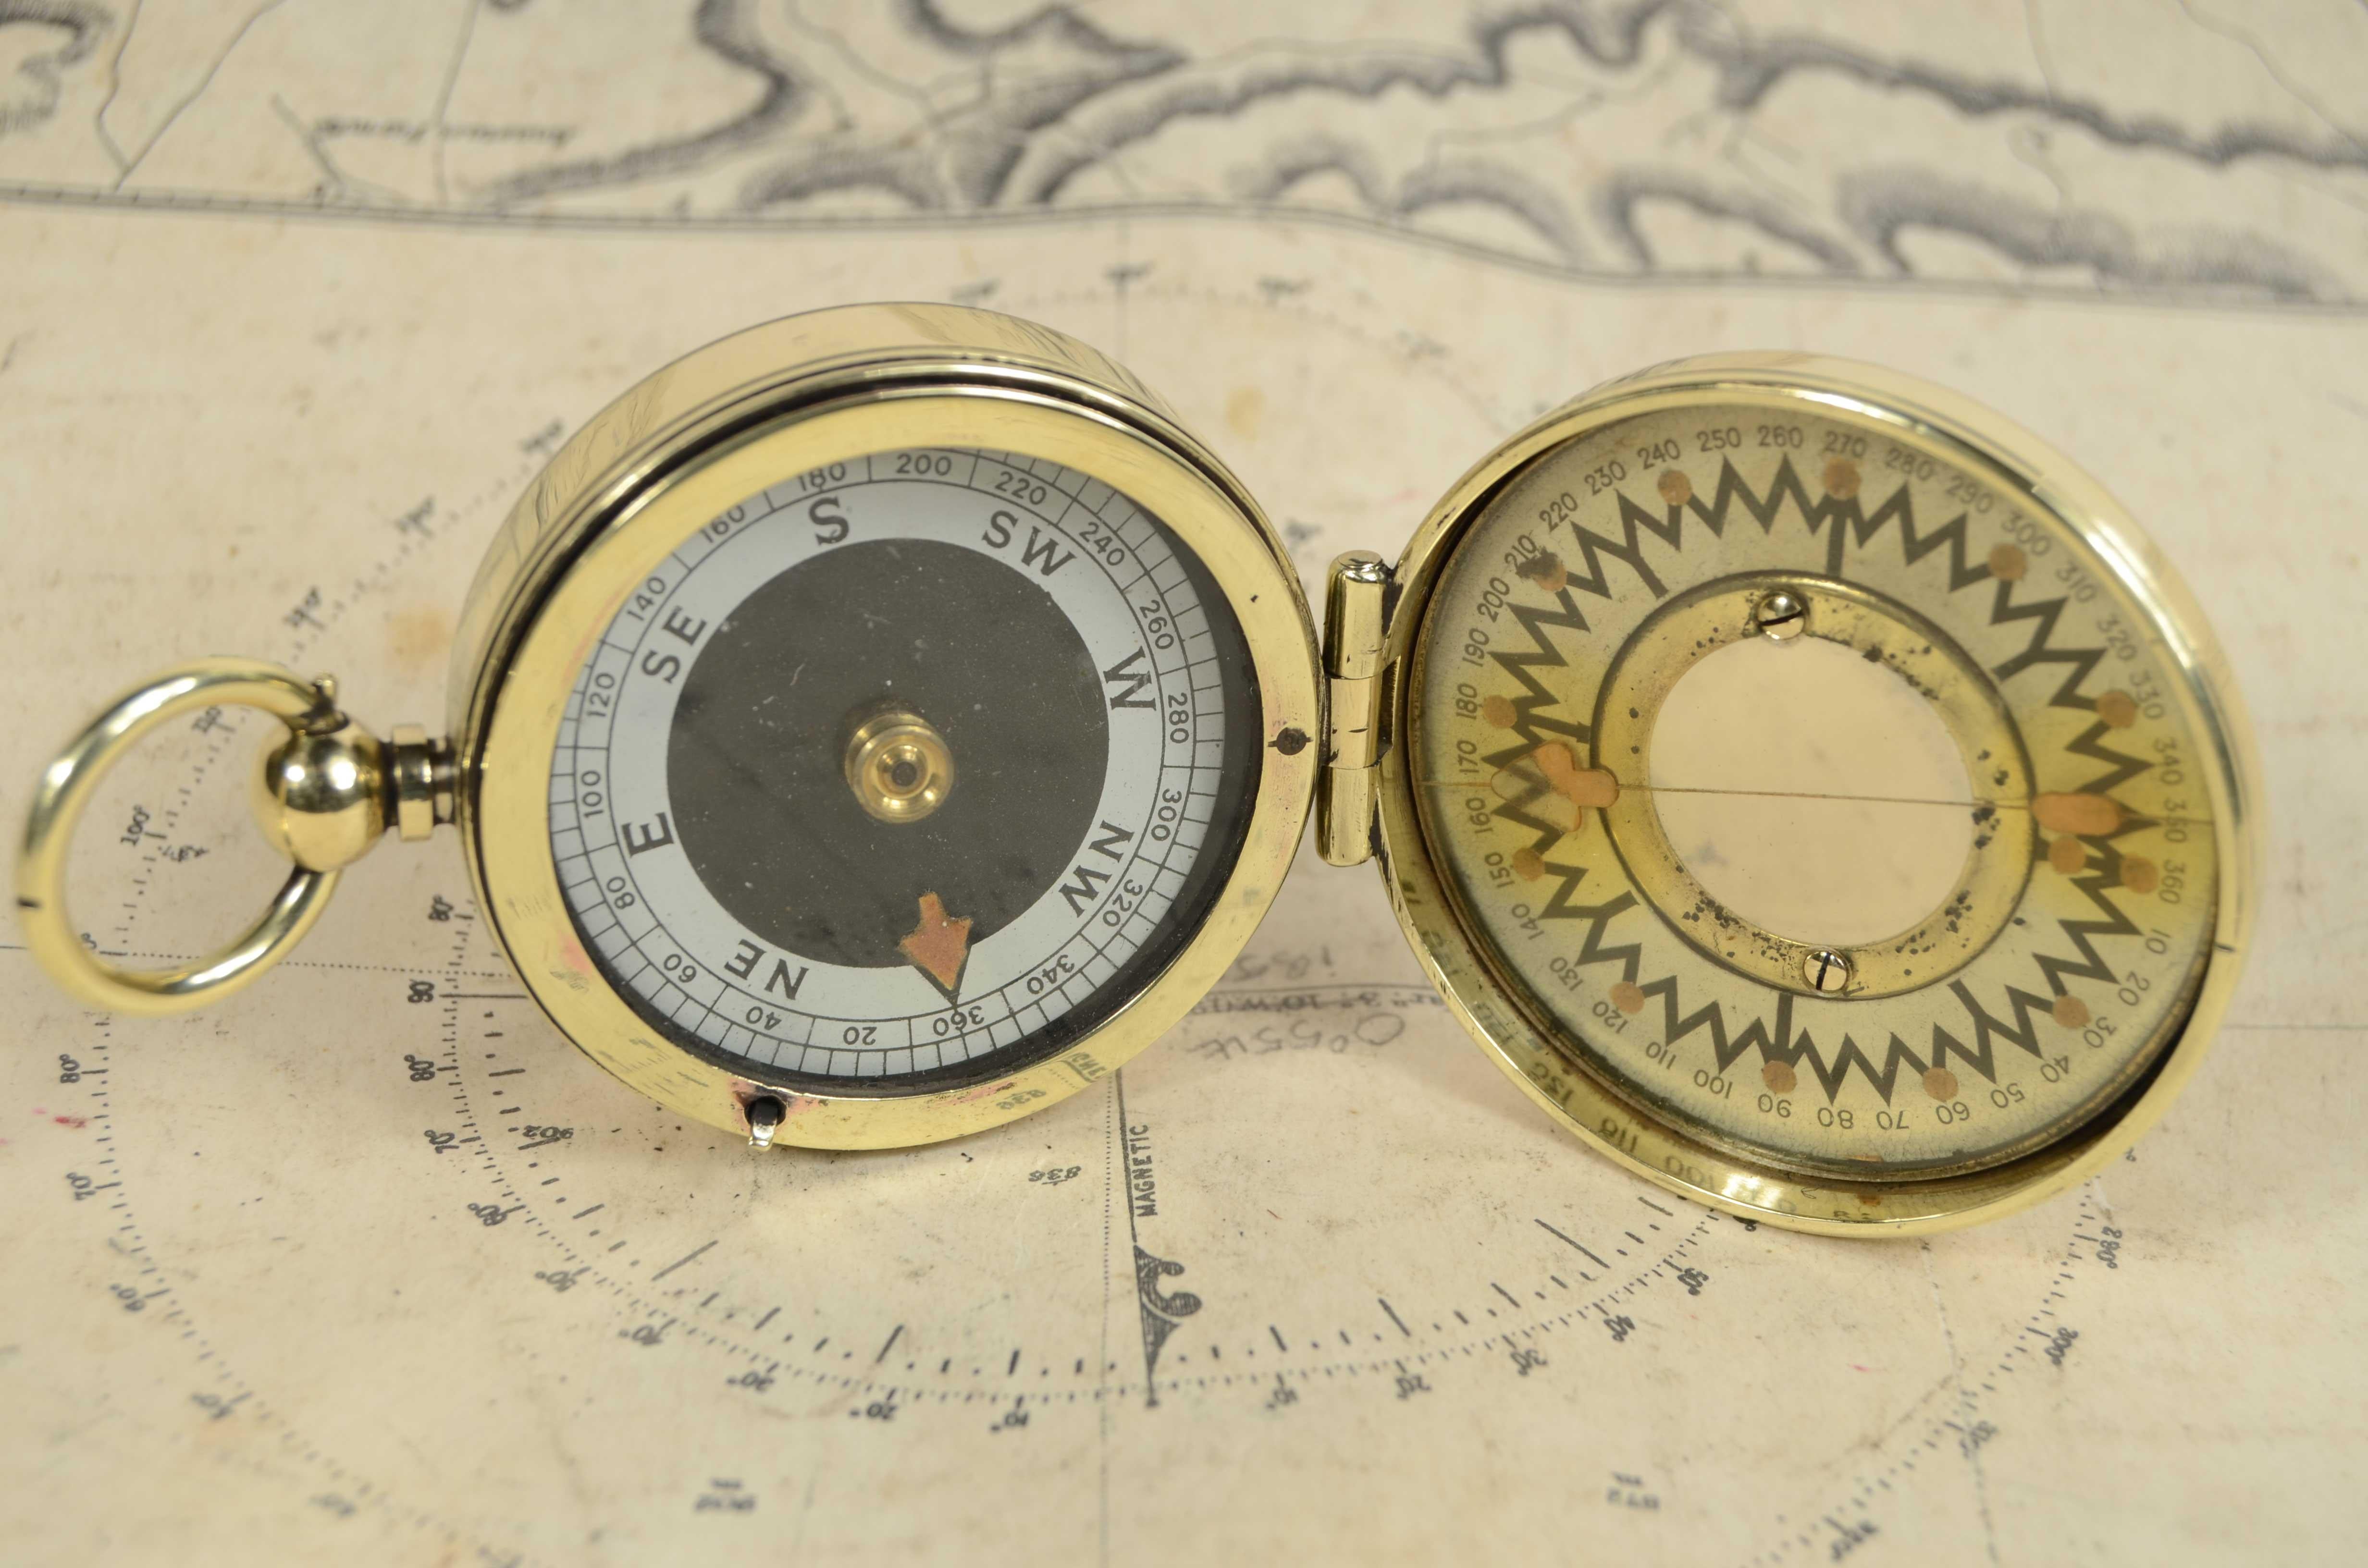 Nautischer Vermessungskompass aus Messing um 1920, signiert The Magnapole Patend applied for Short & Mason Makers London; kleiner Kompass, der außerhalb von Magnetfeldern zur Überprüfung des Schiffskurses verwendet wird. 
Der Kompass ist mit einem